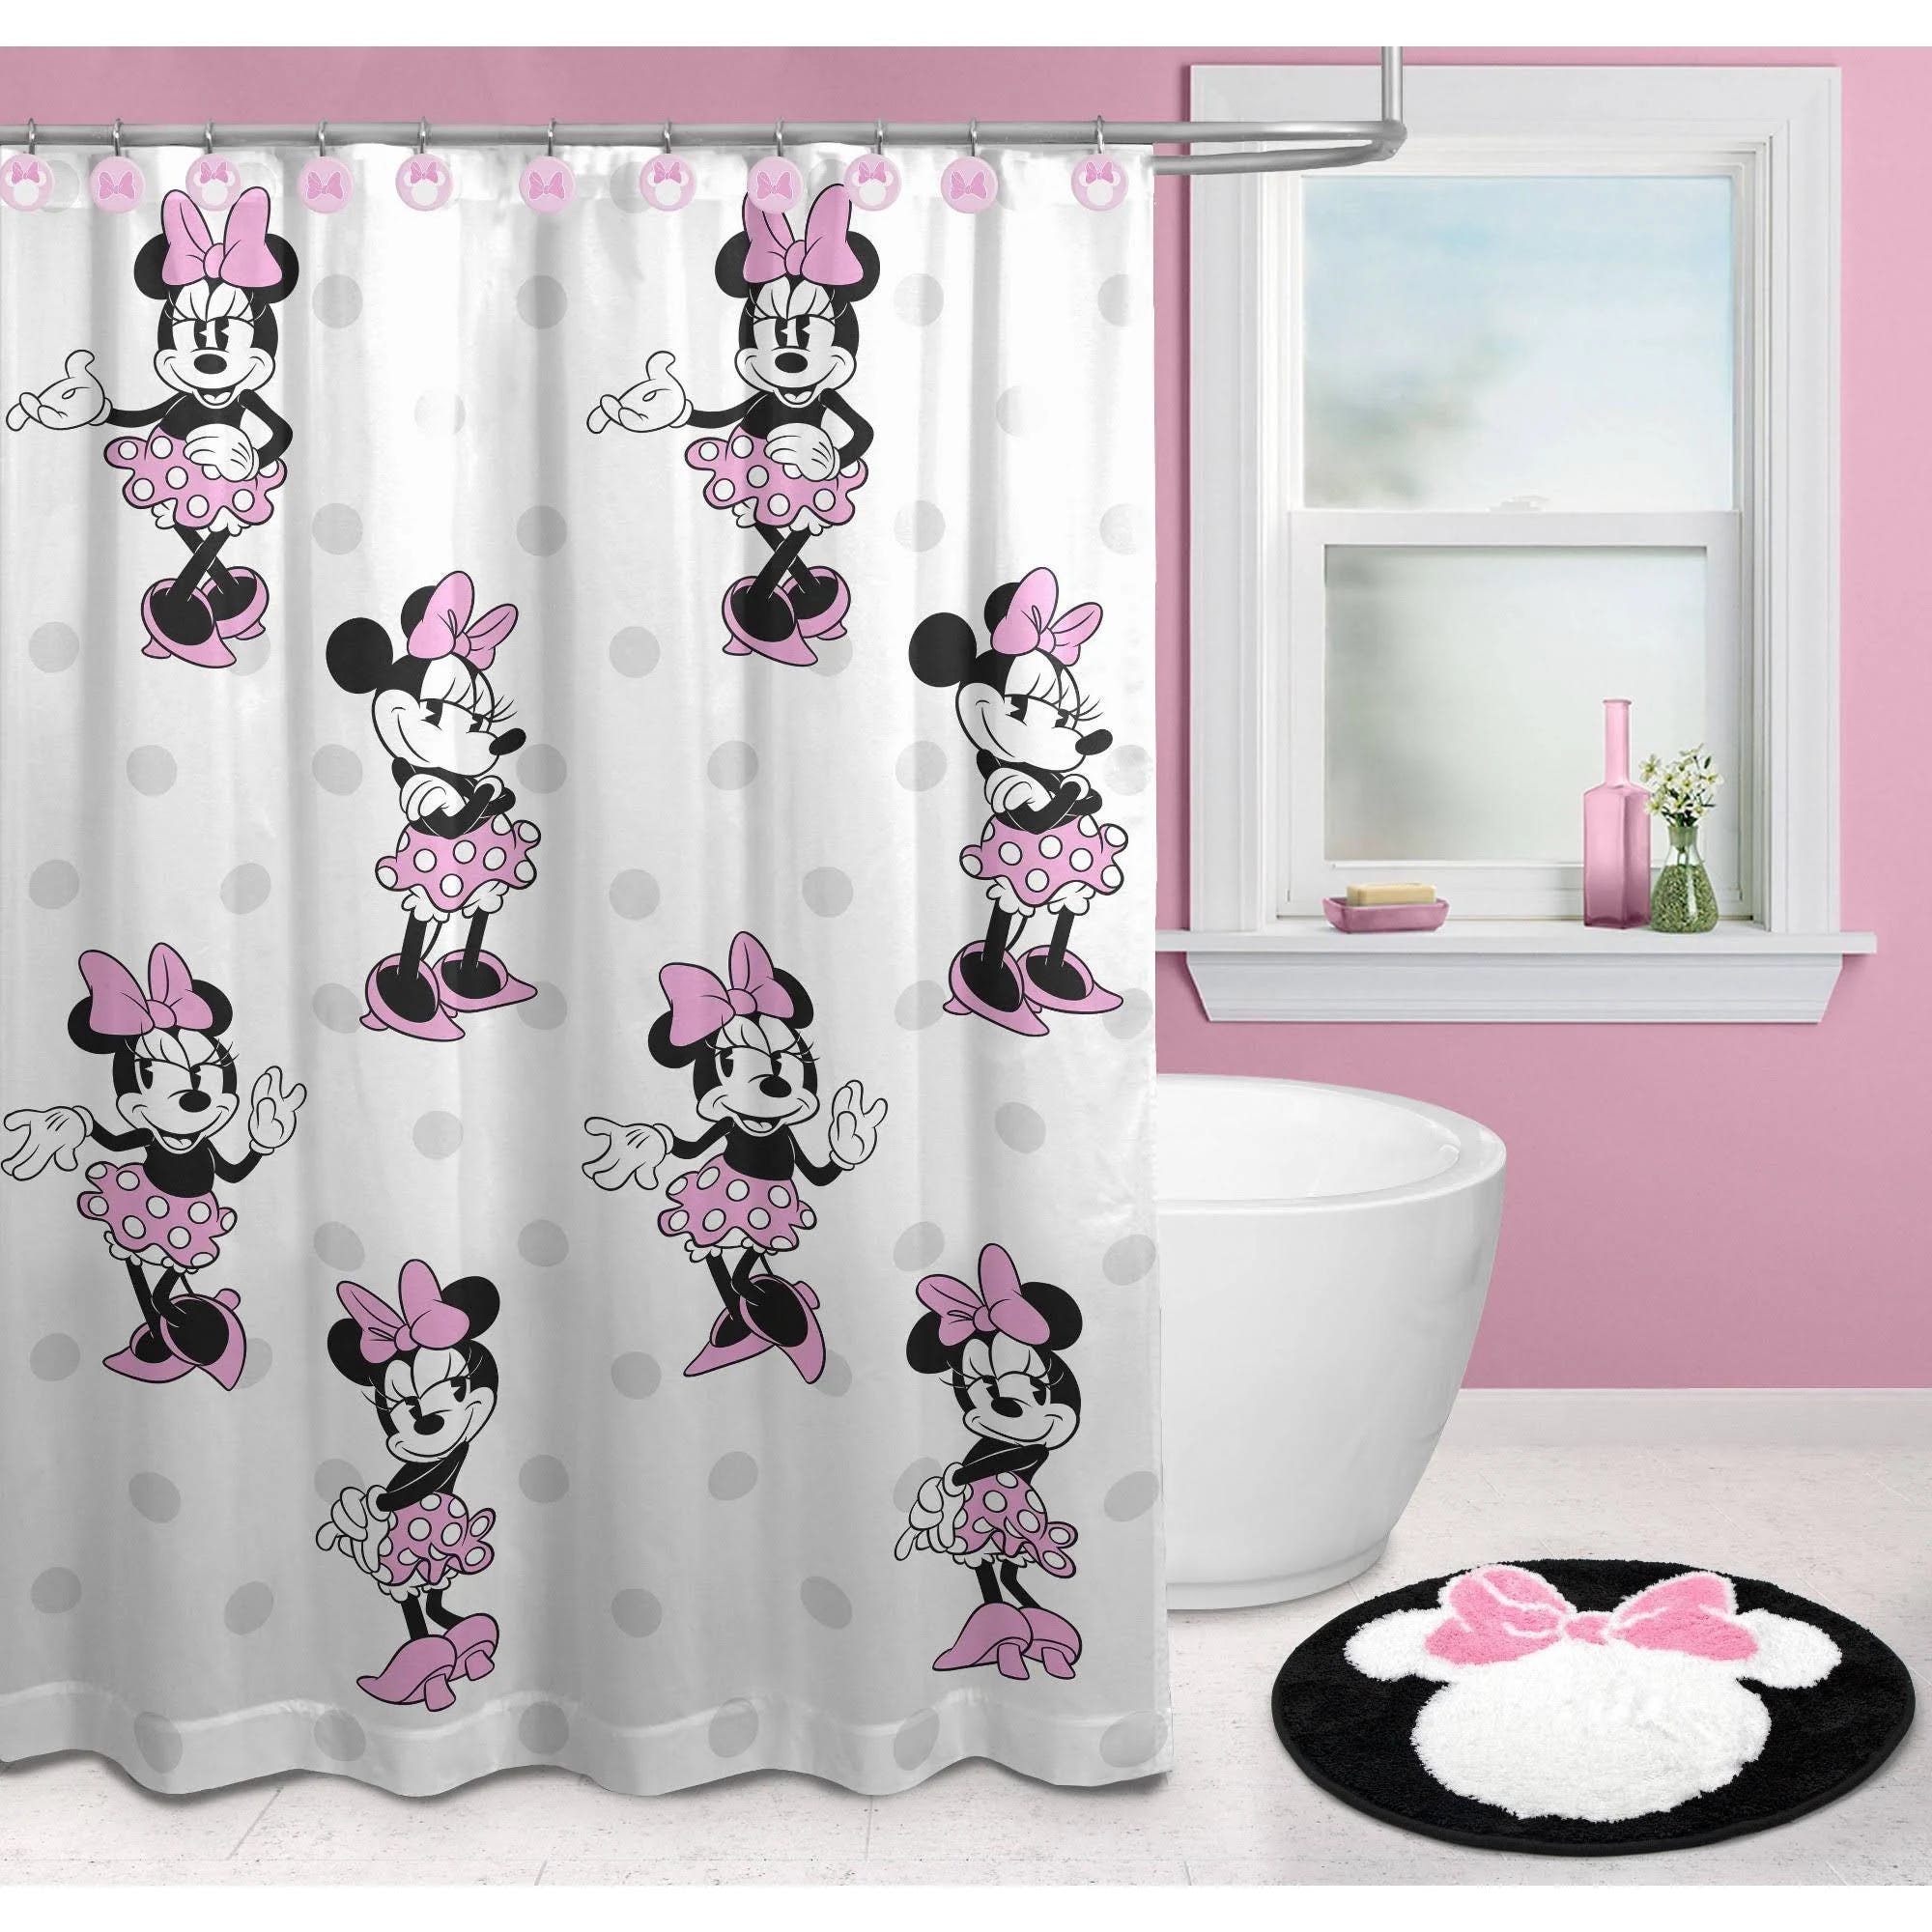 Minnie Mouse Kids' Bath Set: Shower Curtain, Rug, and Hooks | Image